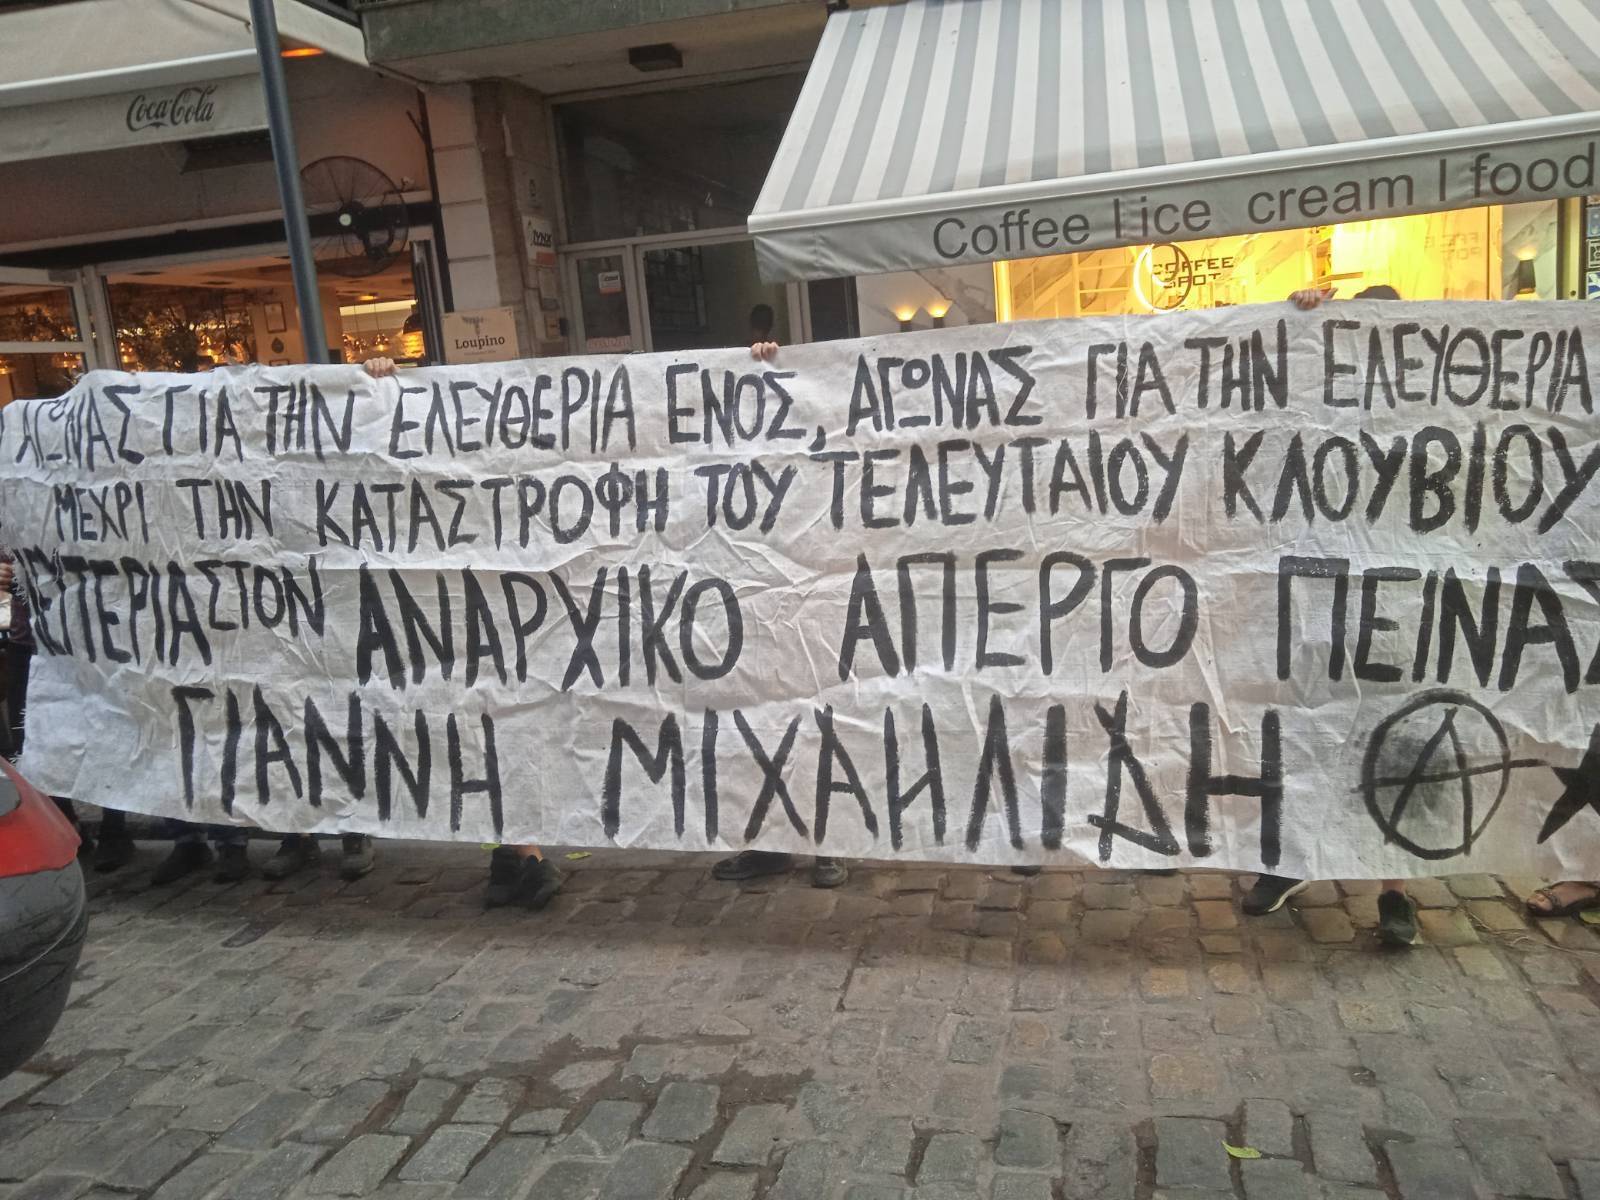 [Θεσσαλονίκη] Παρέμβαση έξω από το γραφείο του βουλευτή της ΝΔ Σταύρου Καλαφάτη | Συνέλευση Αλληλεγγύης Στον Αναρχικό Απεργό Πείνας Γιάννη Μιχαηλίδη